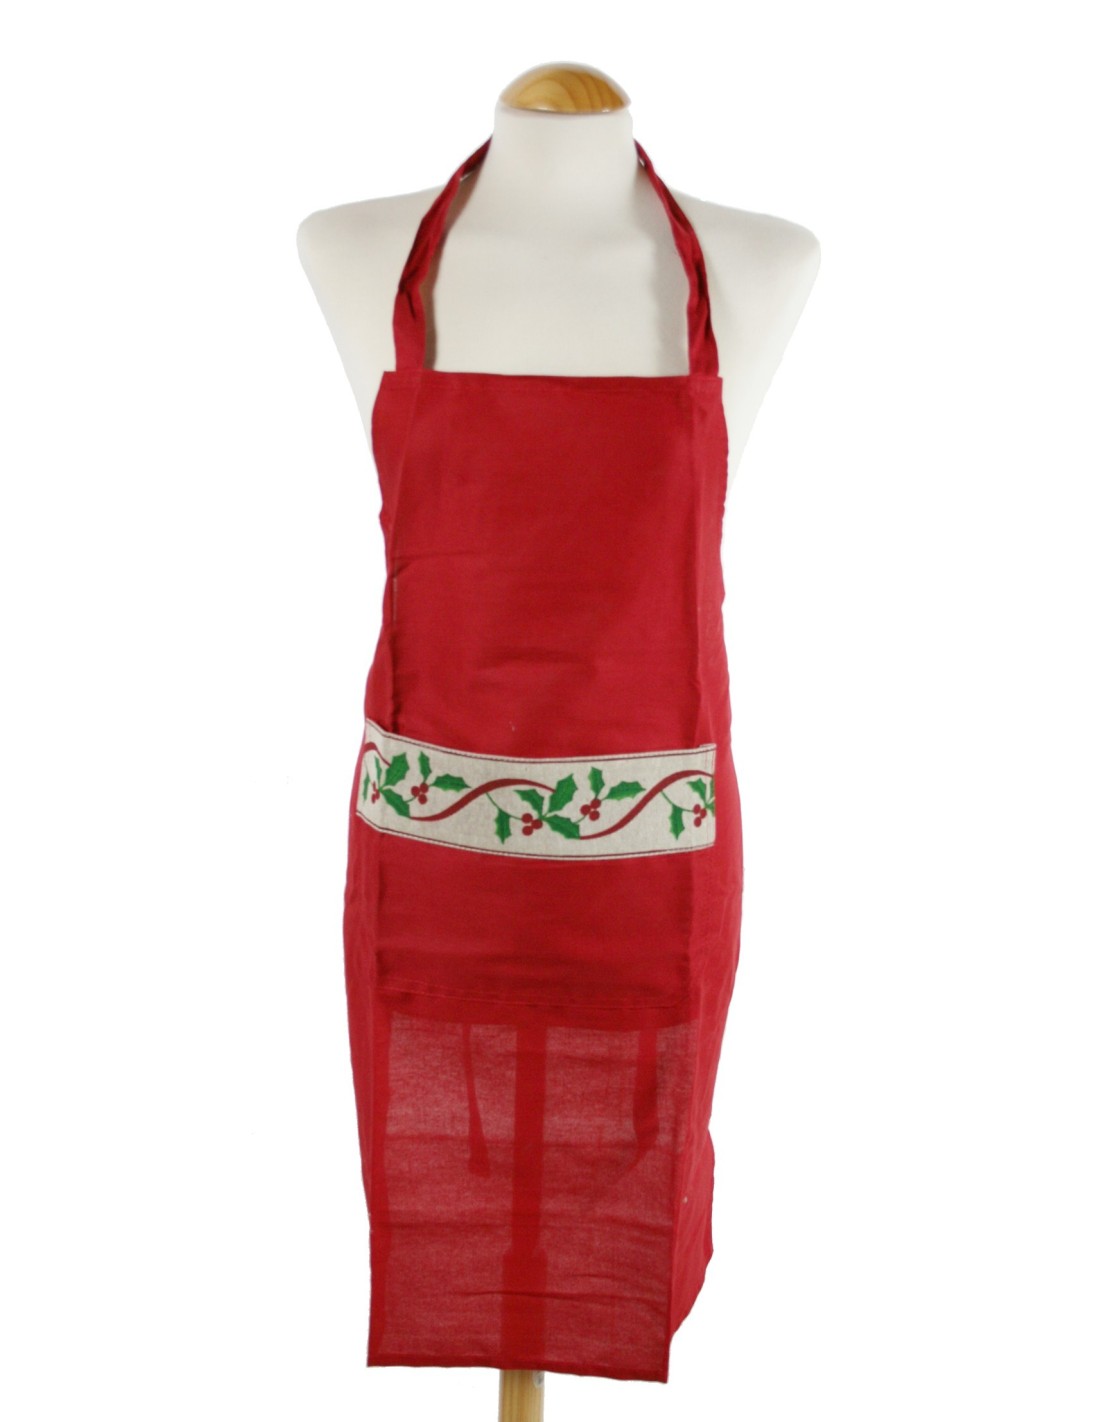 Davantal per a cuina amb disseny Nadalenc de color vermell ideal per Nadal